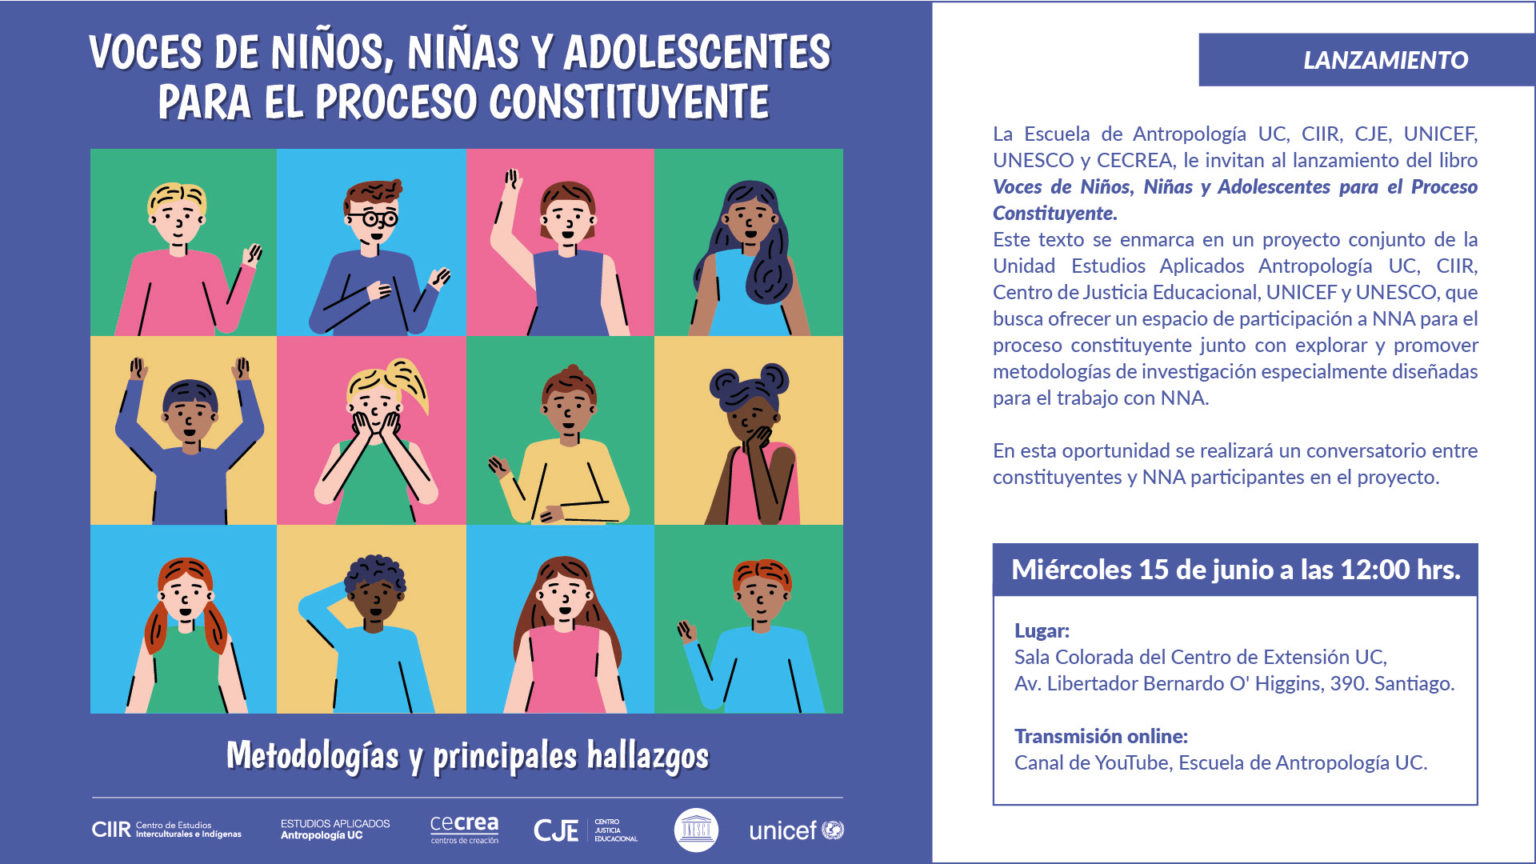 Escuela de Antropología de la Universidad Católica de Chile invita al Lanzamiento del libro “Voces de Niños, Niñas y Adolescentes para el Proceso Constituyente”